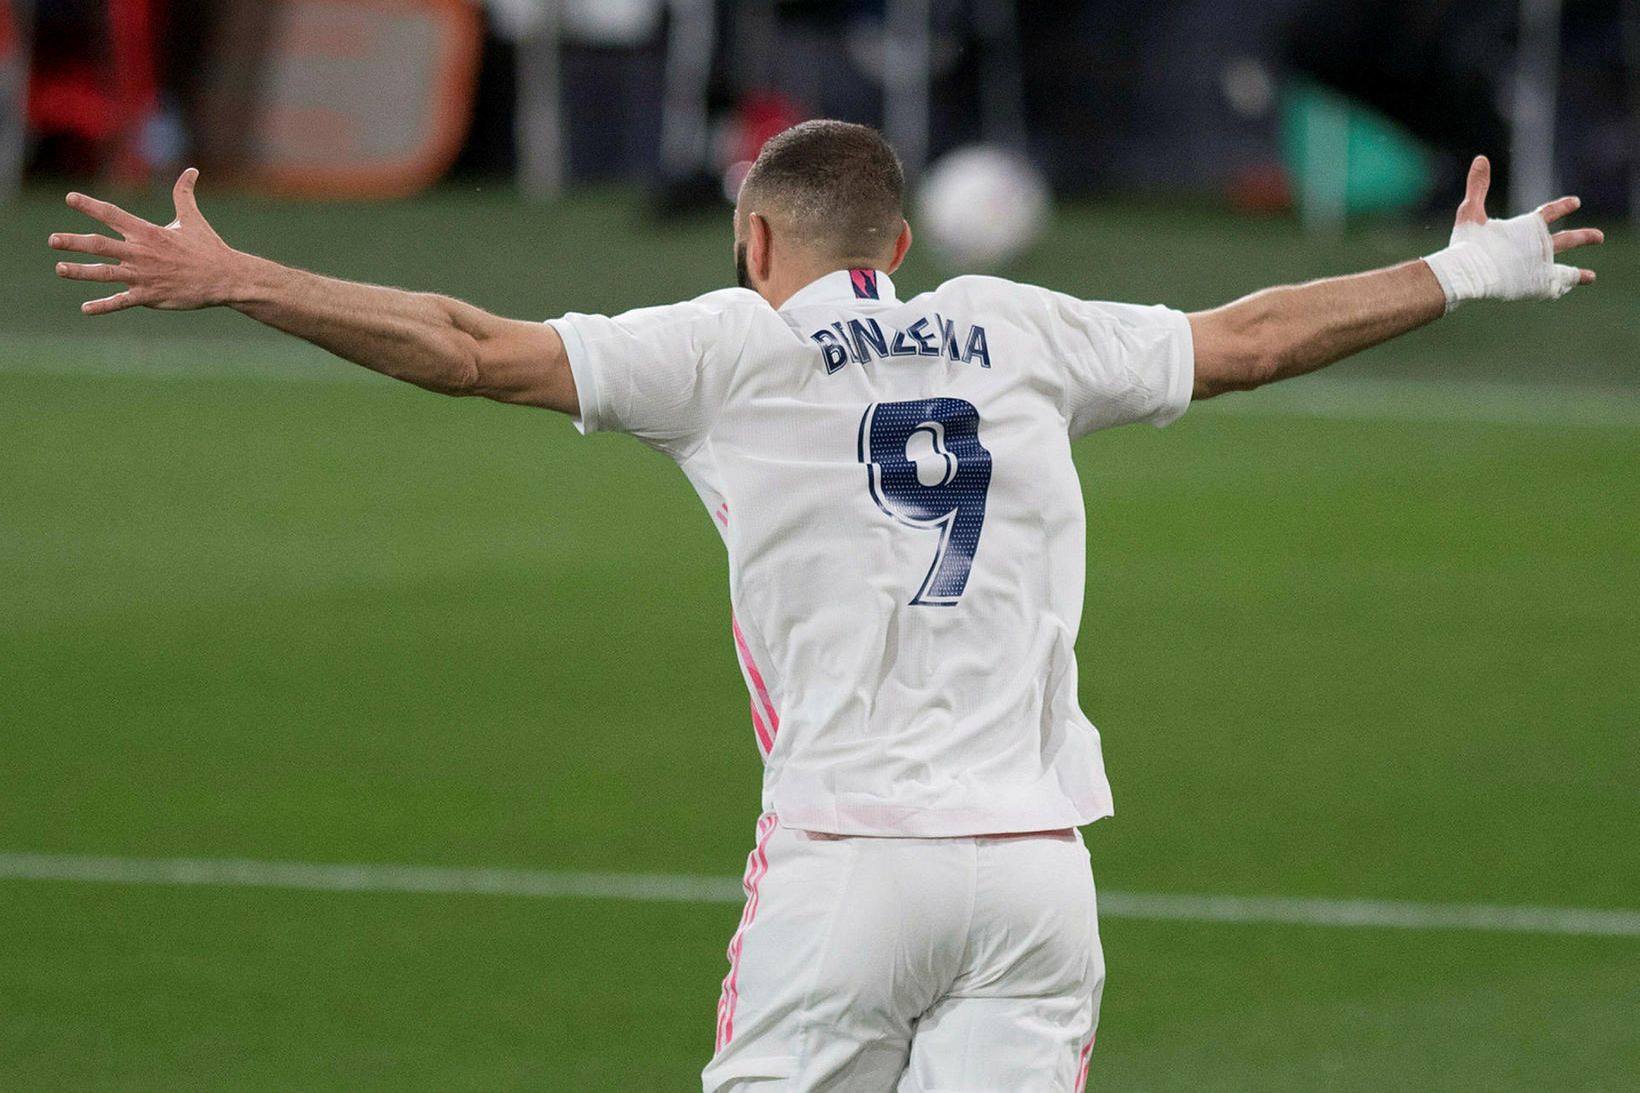 Karim Benzema skoraði tvívegis fyrir Real Madrid.